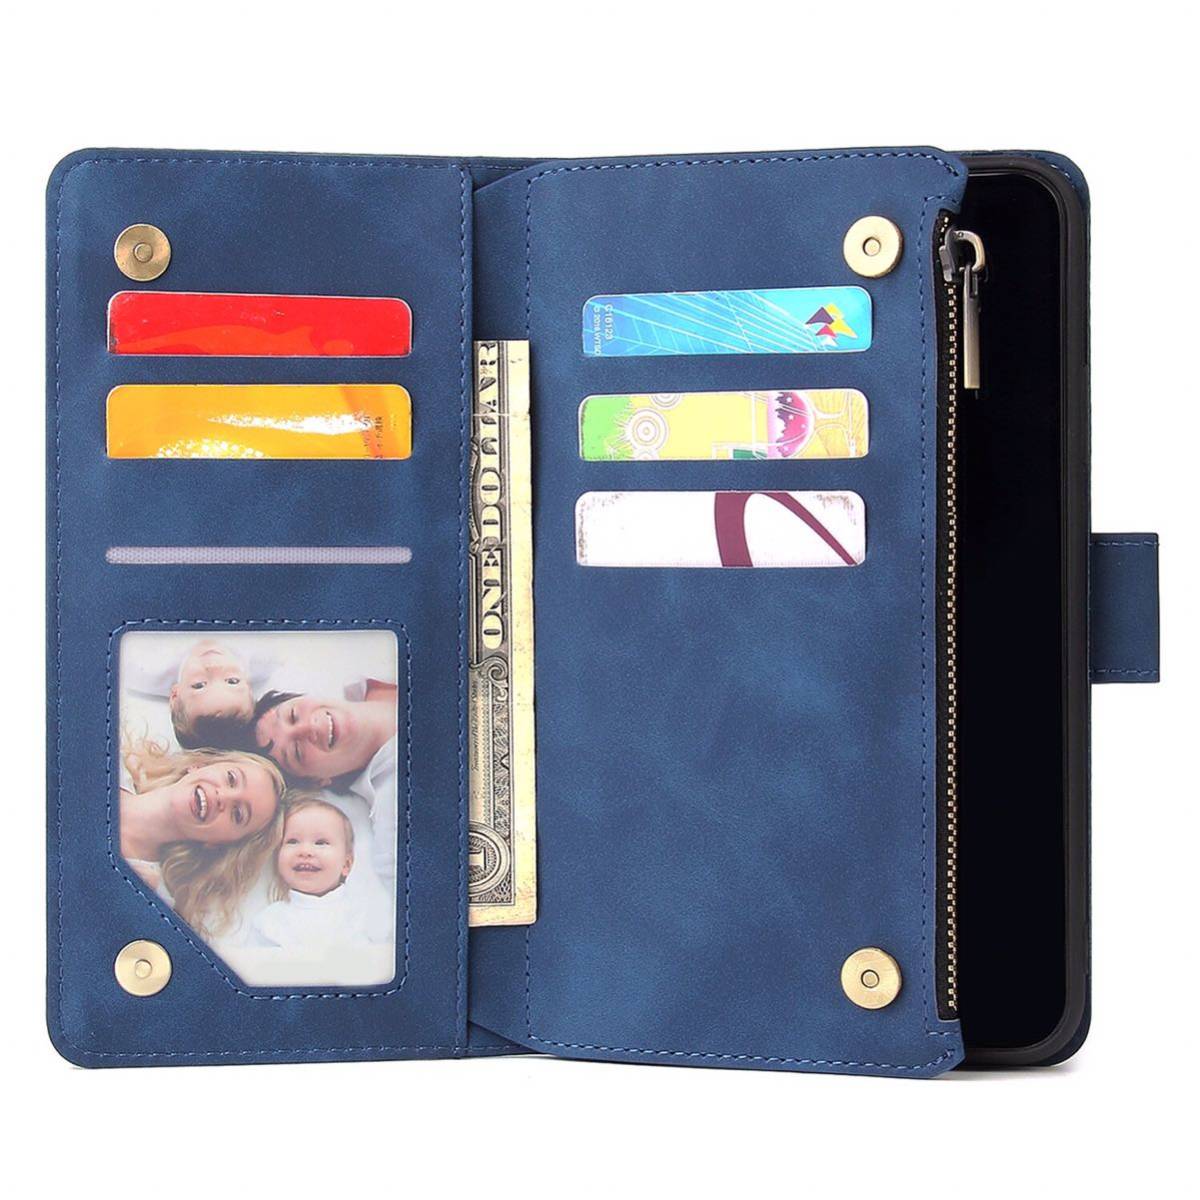 iPhone 11 レザーケース iPhone11 ケース アイフォン11 カバー 手帳型 お財布付き カード収納 ストラップ付き ブルー